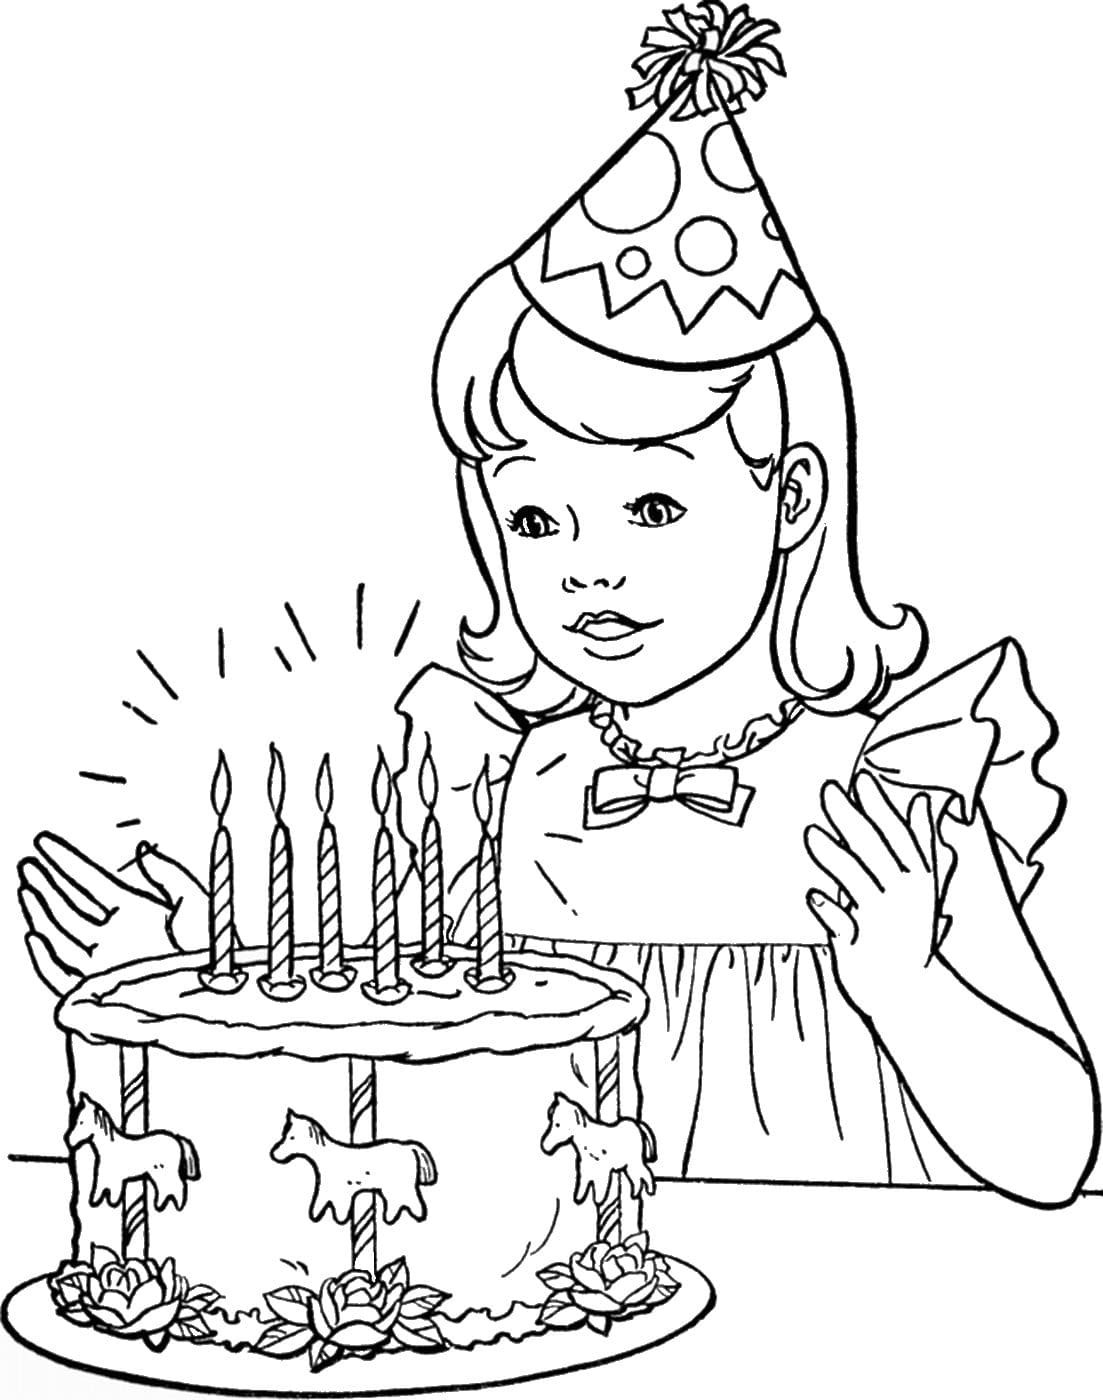 דף צביעה מיוחד של ילדת יום הולדת חגיגית ועוגה יפה